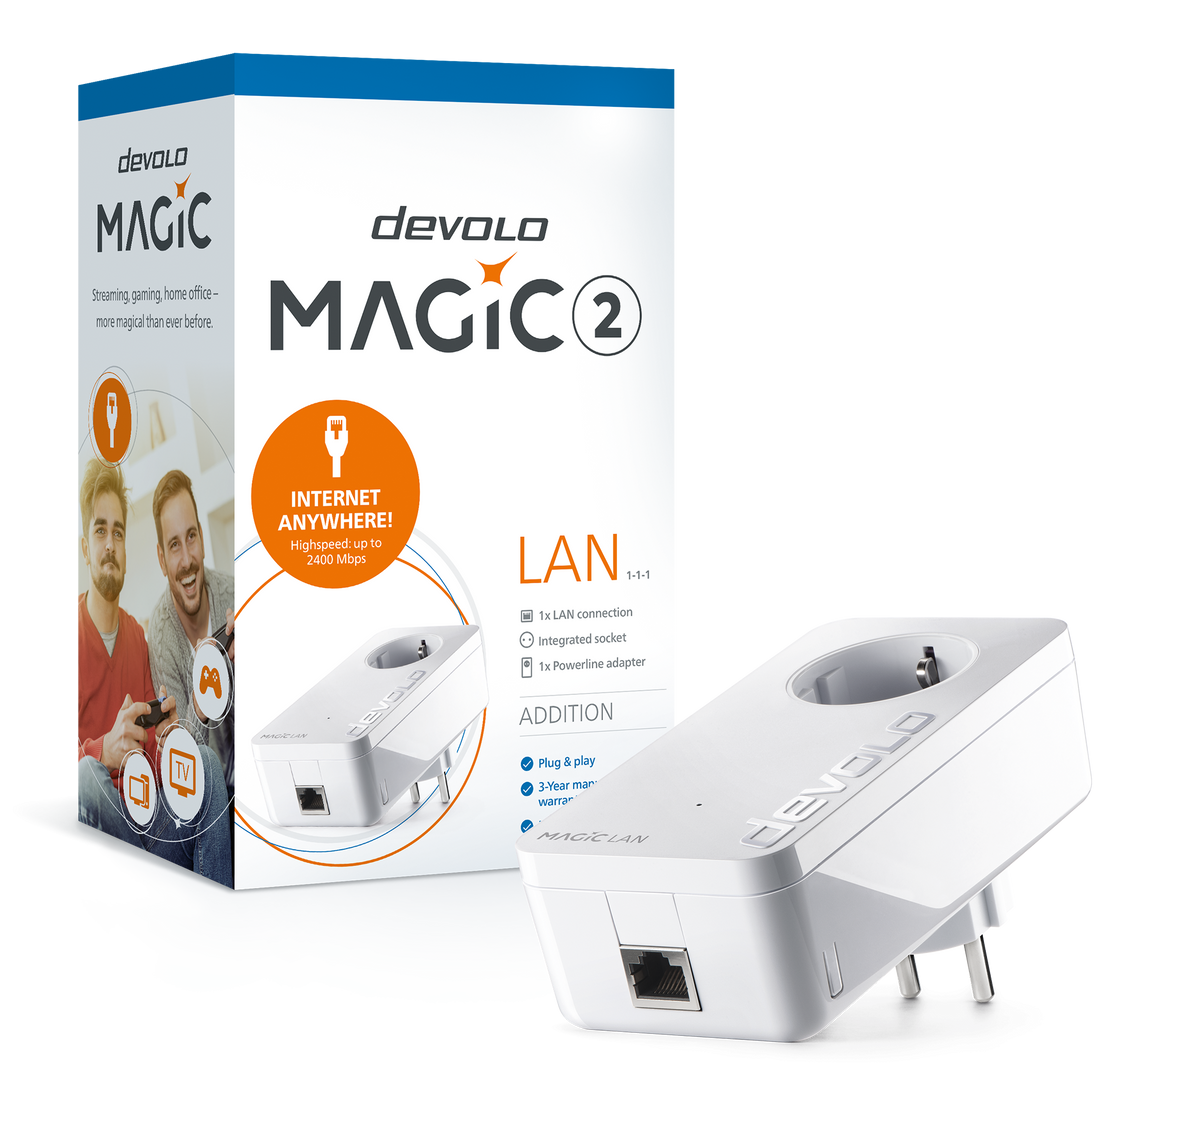 devolo Magic 2 LAN, adaptador adicional, velocidad Powerline de hasta 2400 Mbps con 1 puerto LAN - PT8259